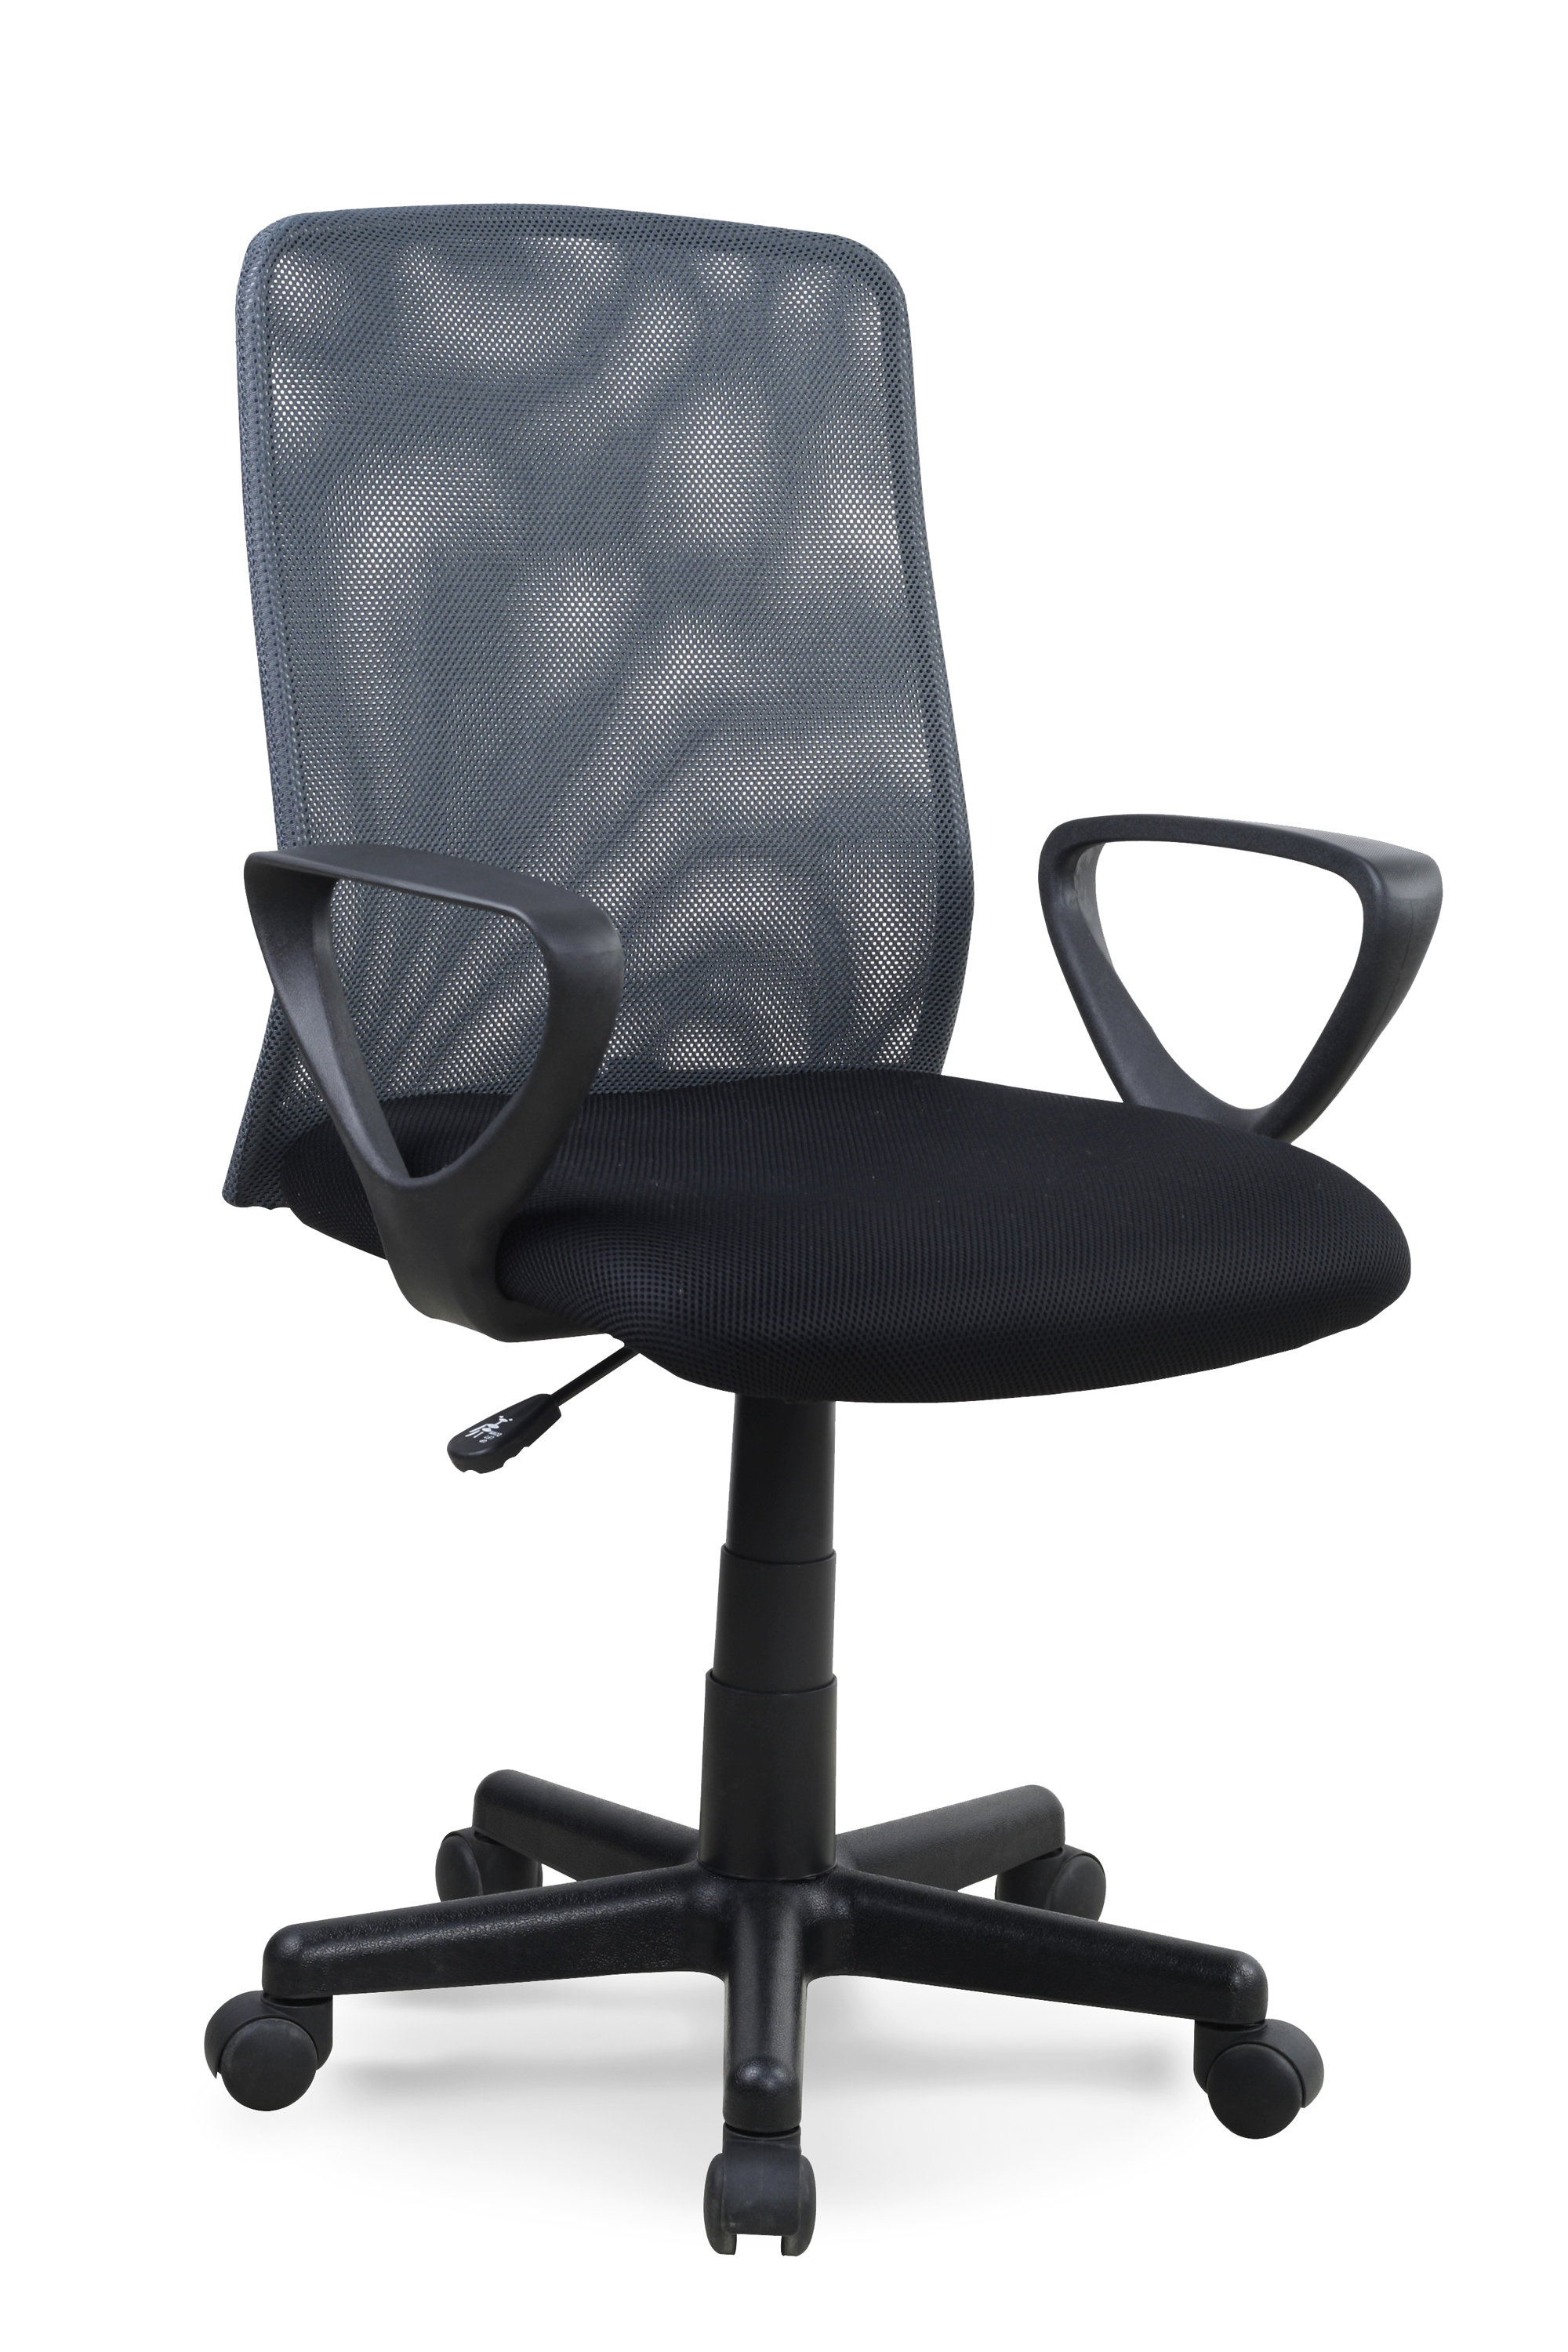 ALEX stolica, boja: crna/siva